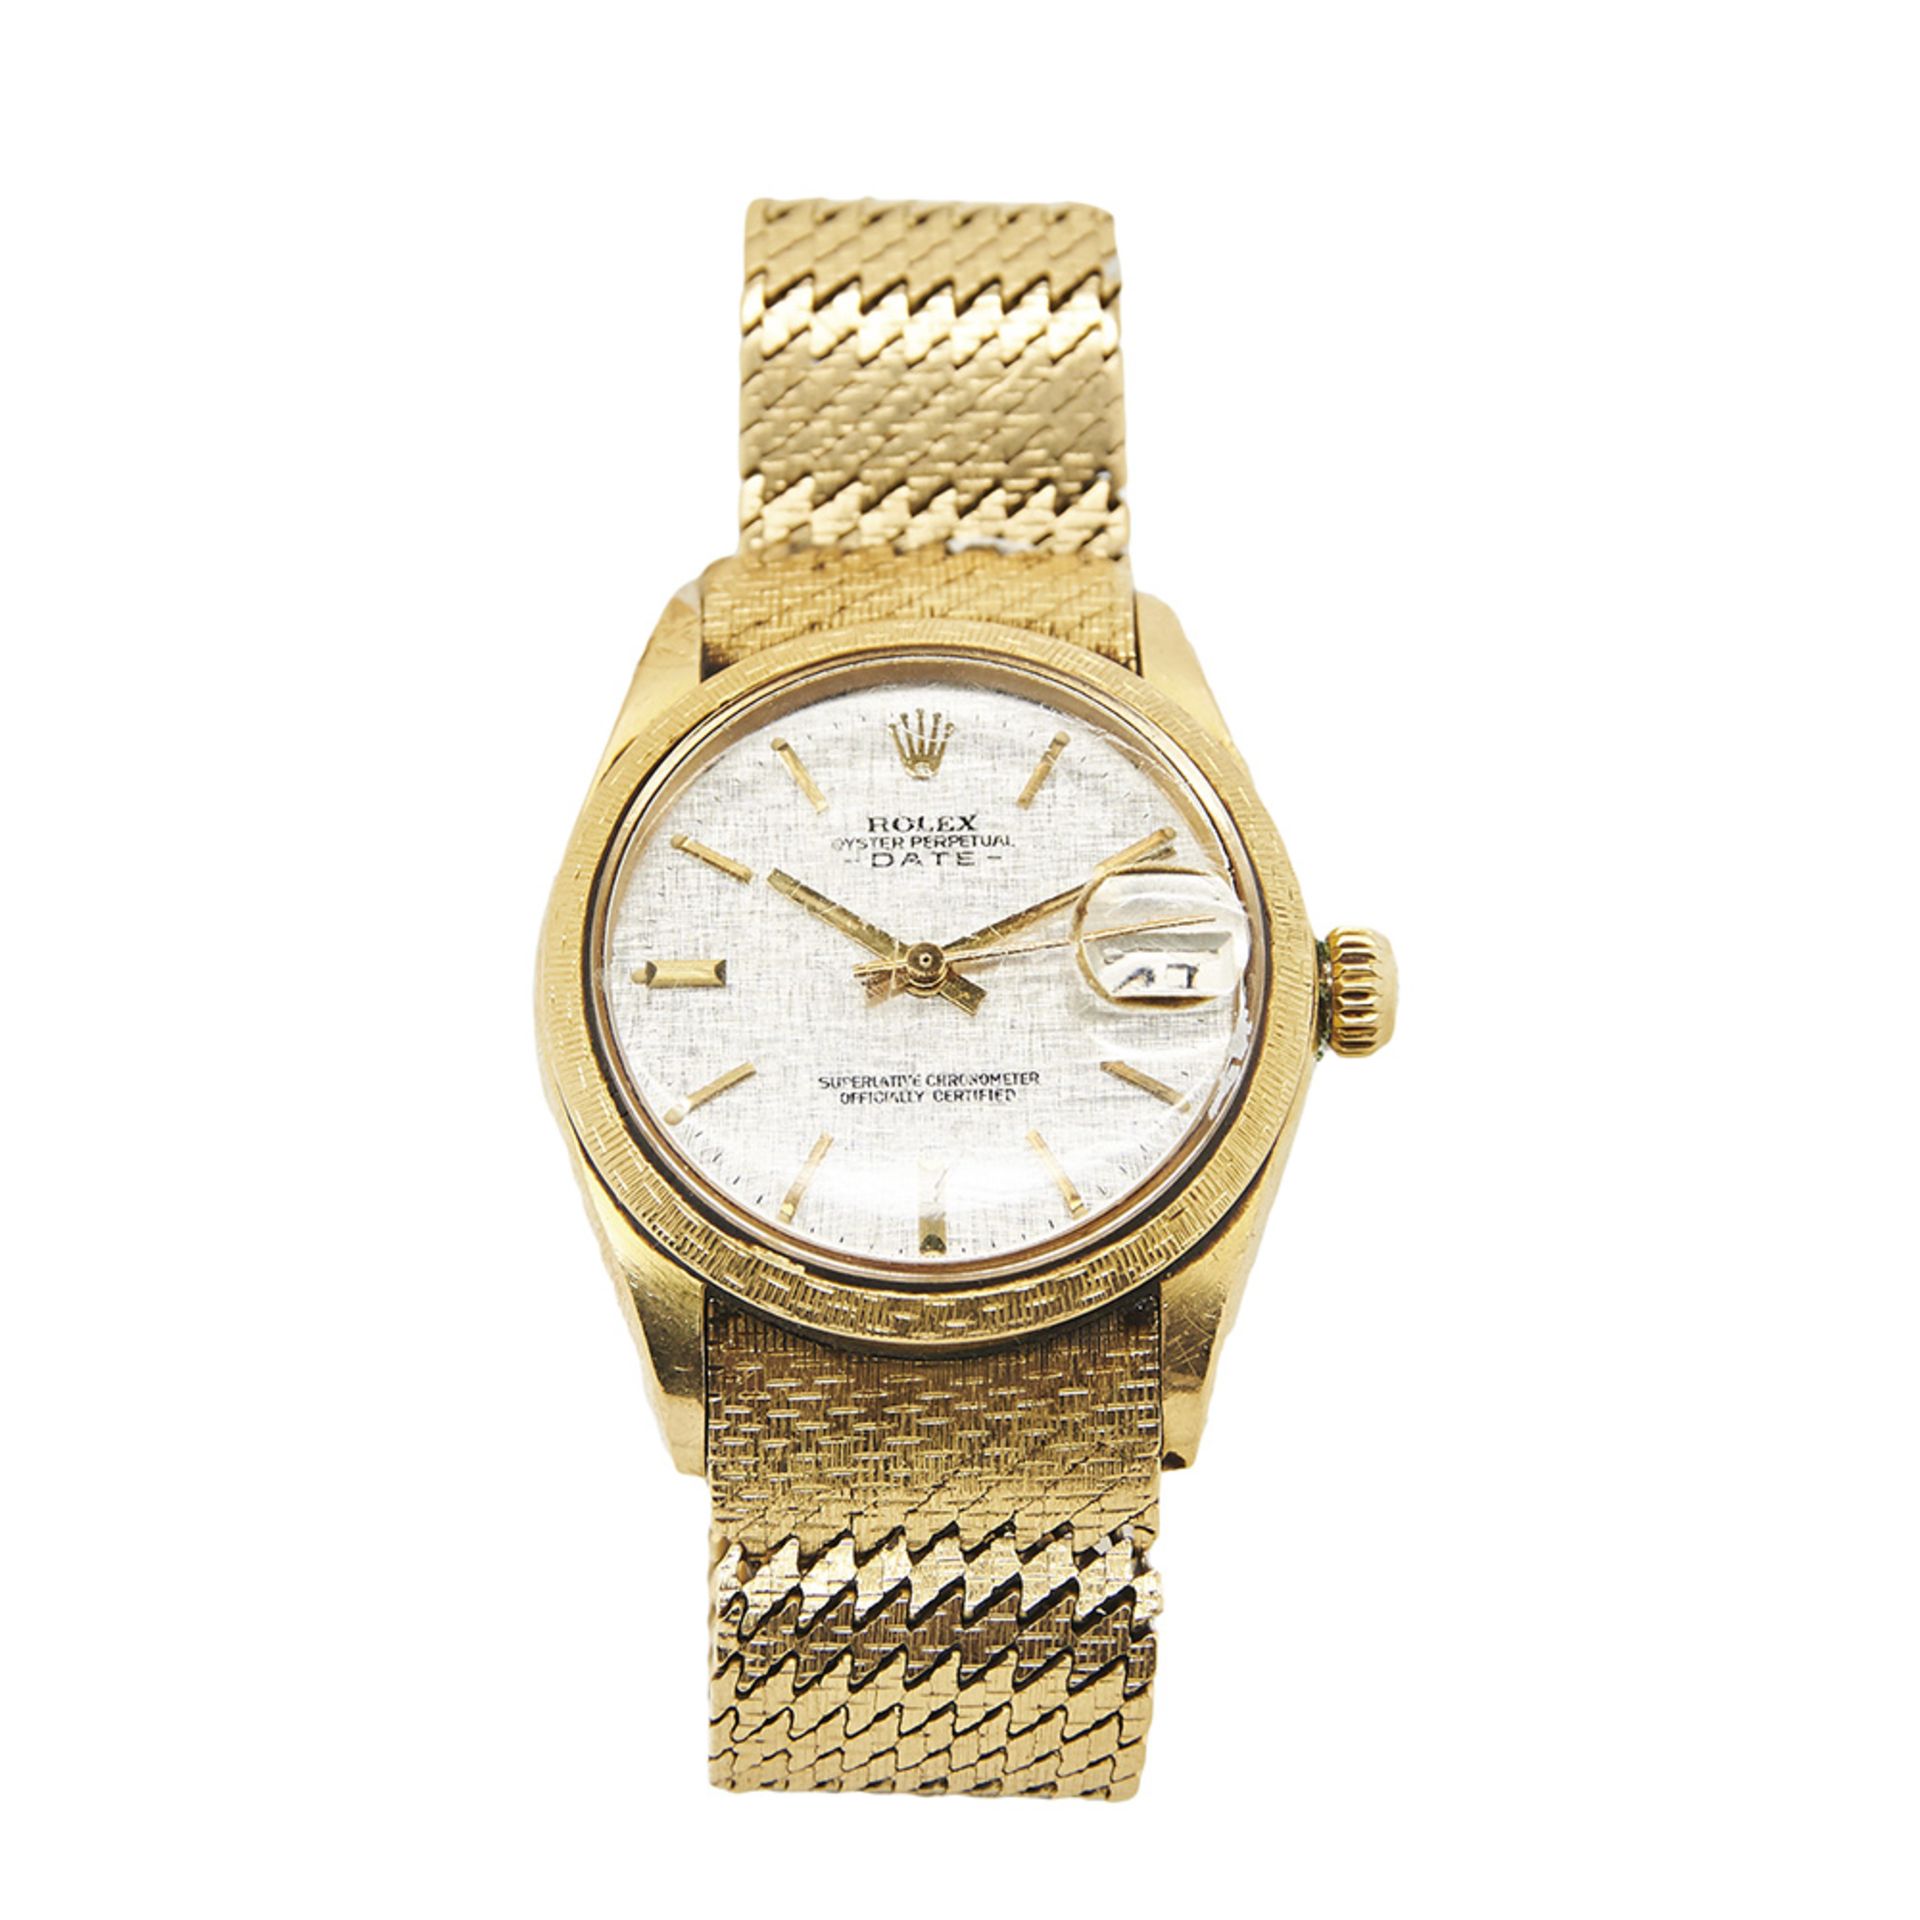 Reloj Rolex Oyster Perpetual Date de pulsera para cadete. En oro. Esfera argenté con numeración a